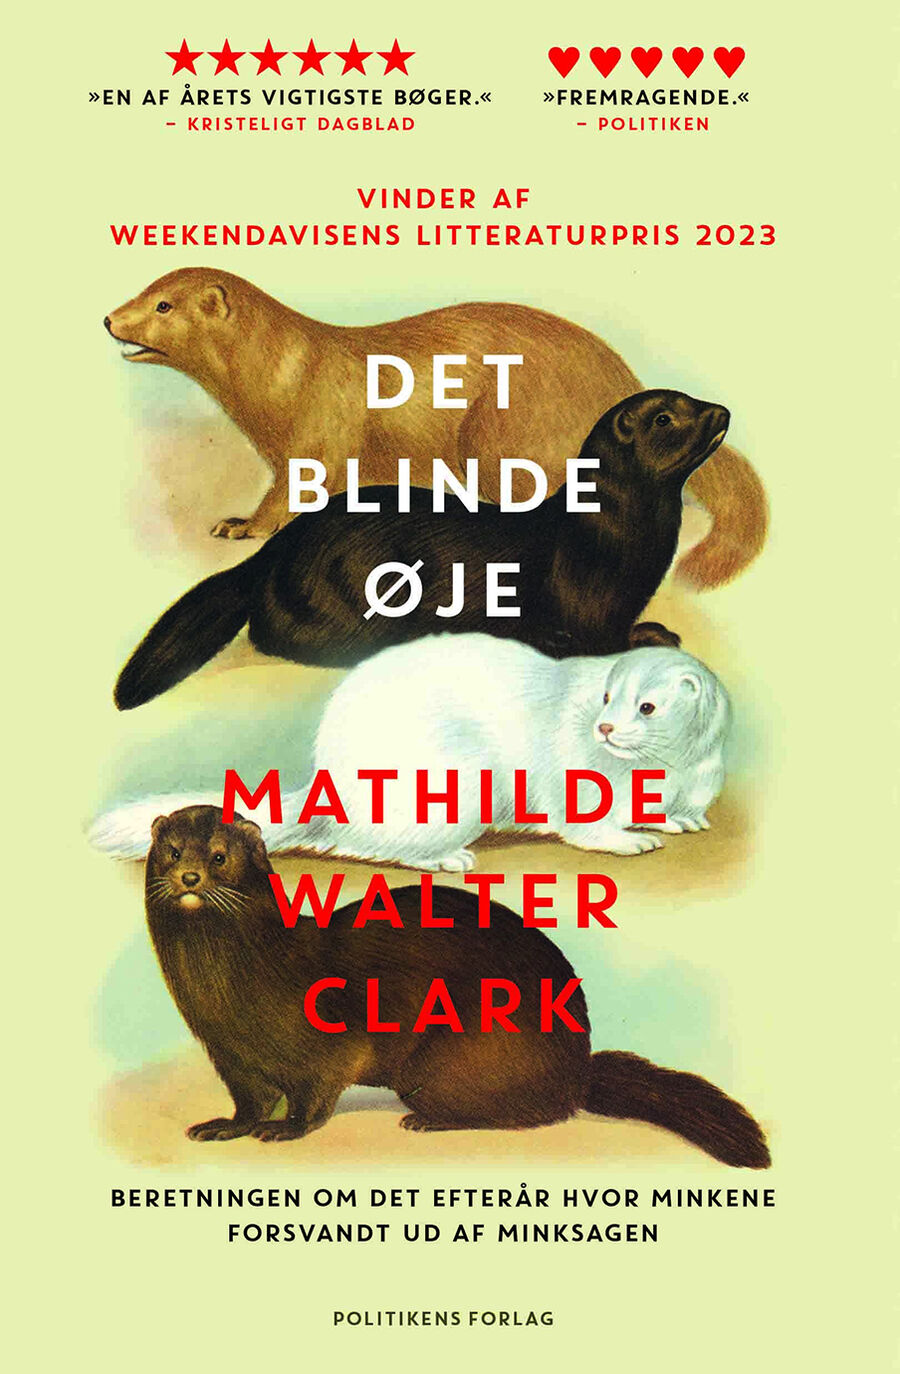 Marie anbefaler: Det blinde øje af Mathilde Walter Clark